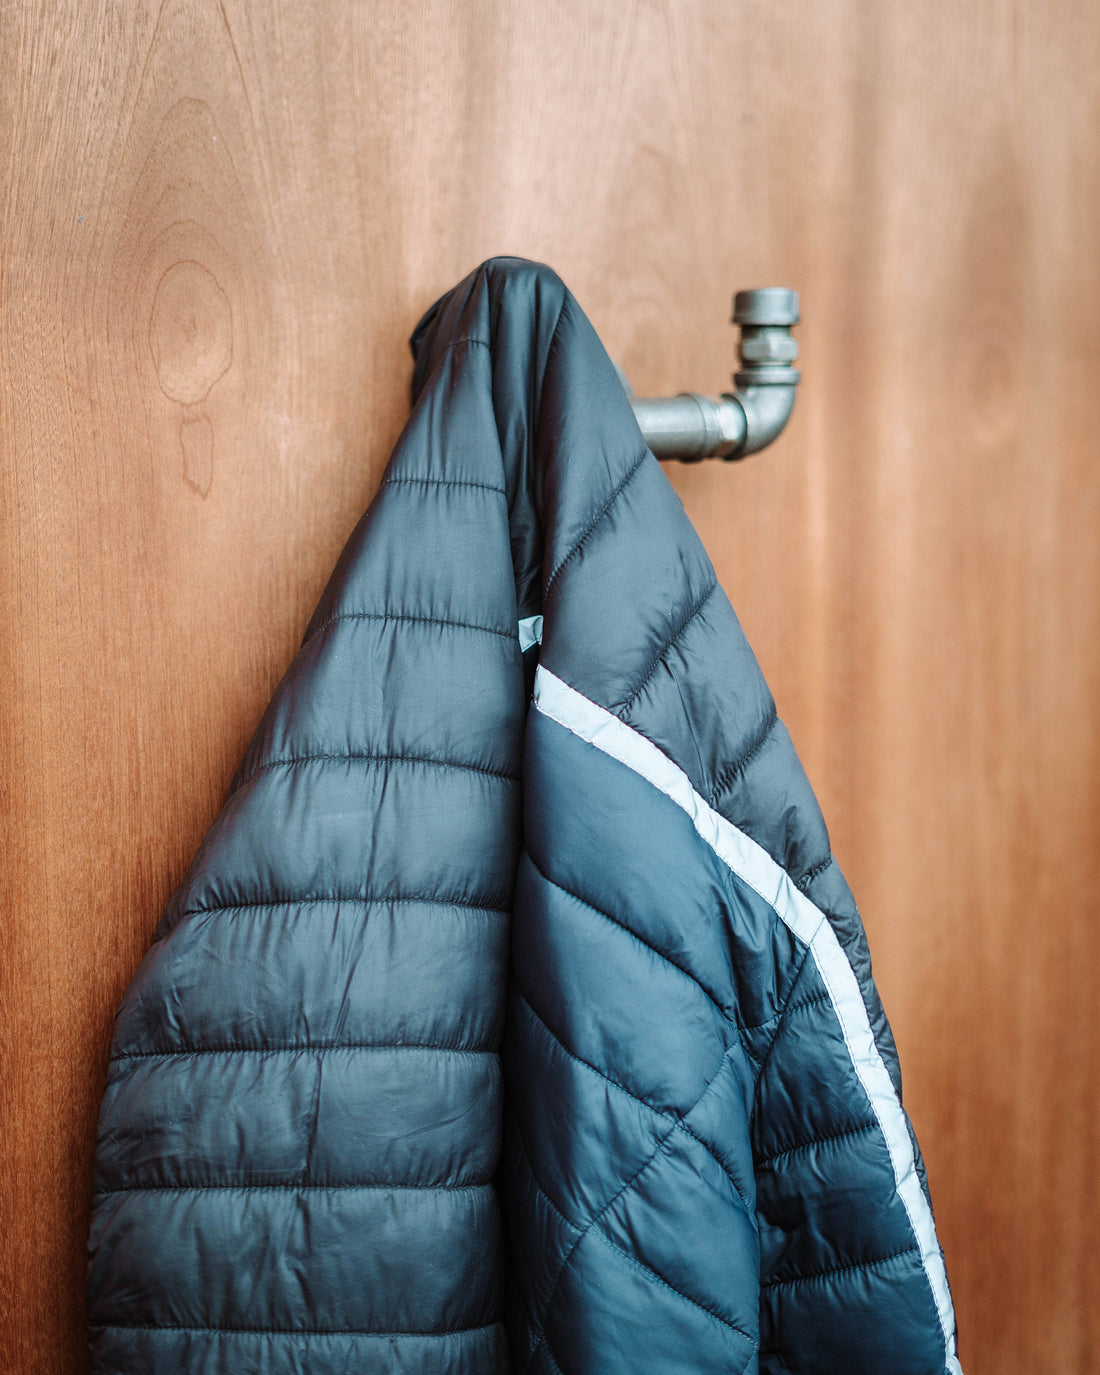 Luxurious Coat Hooks, showcasing coat hangers, door hooks, and wall coat rack options.